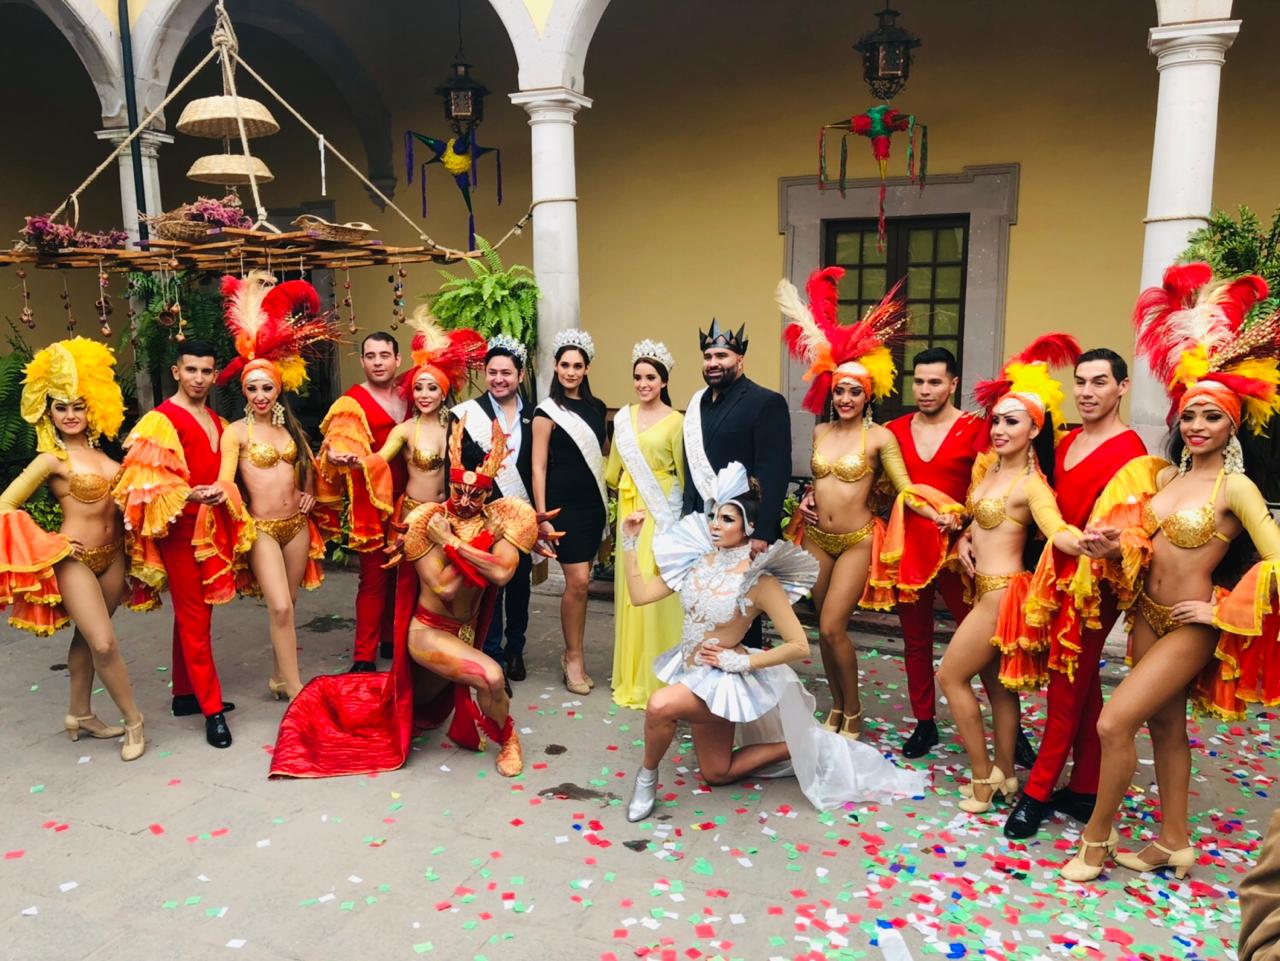 Promocionan en Durango el Carnaval de Mazatlán